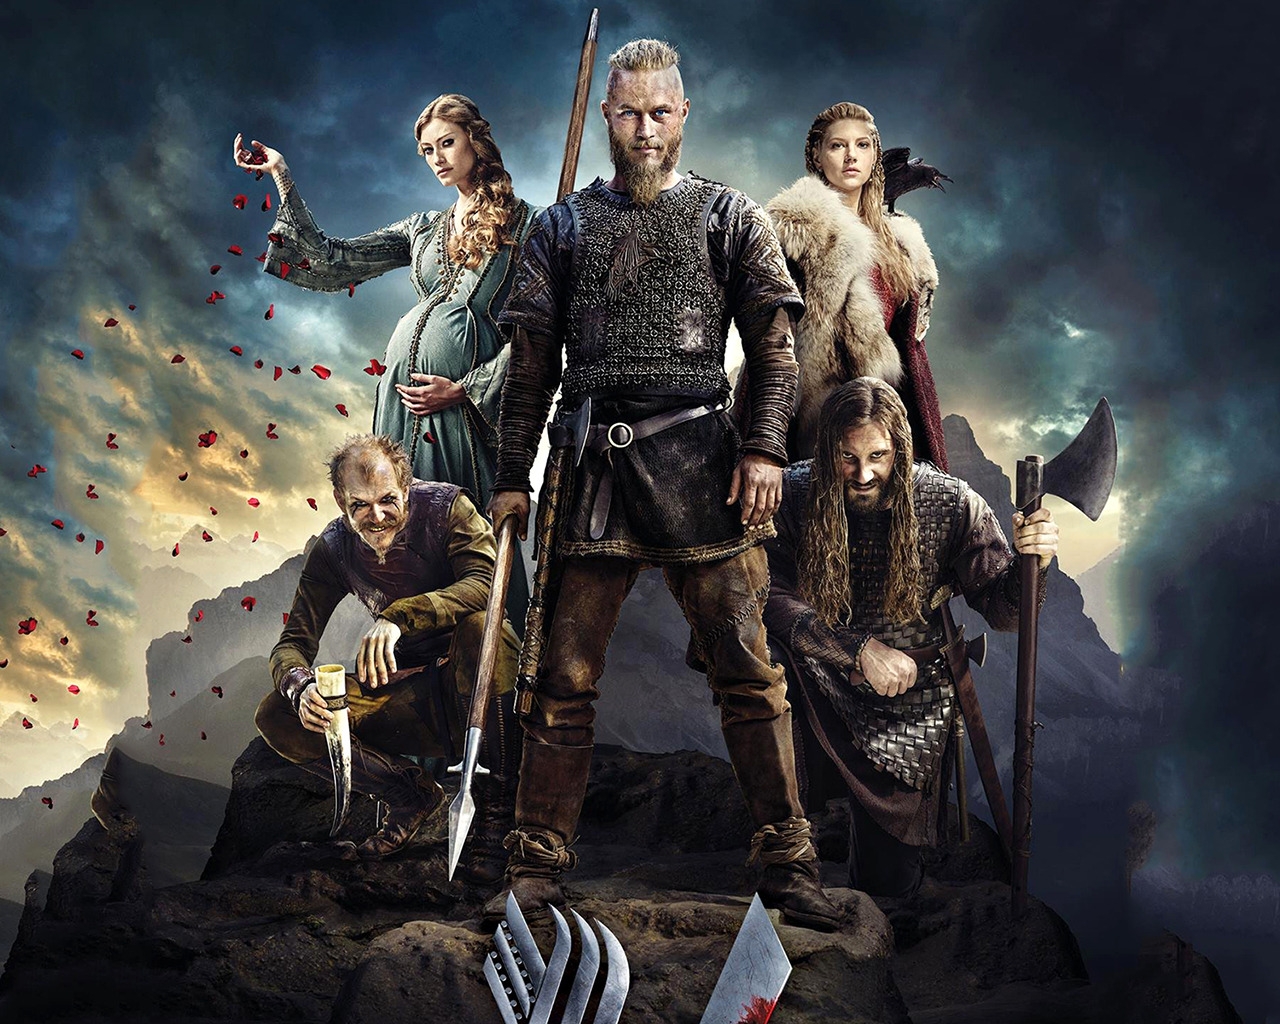 Vikings 2014 Season for 1280 x 1024 resolution